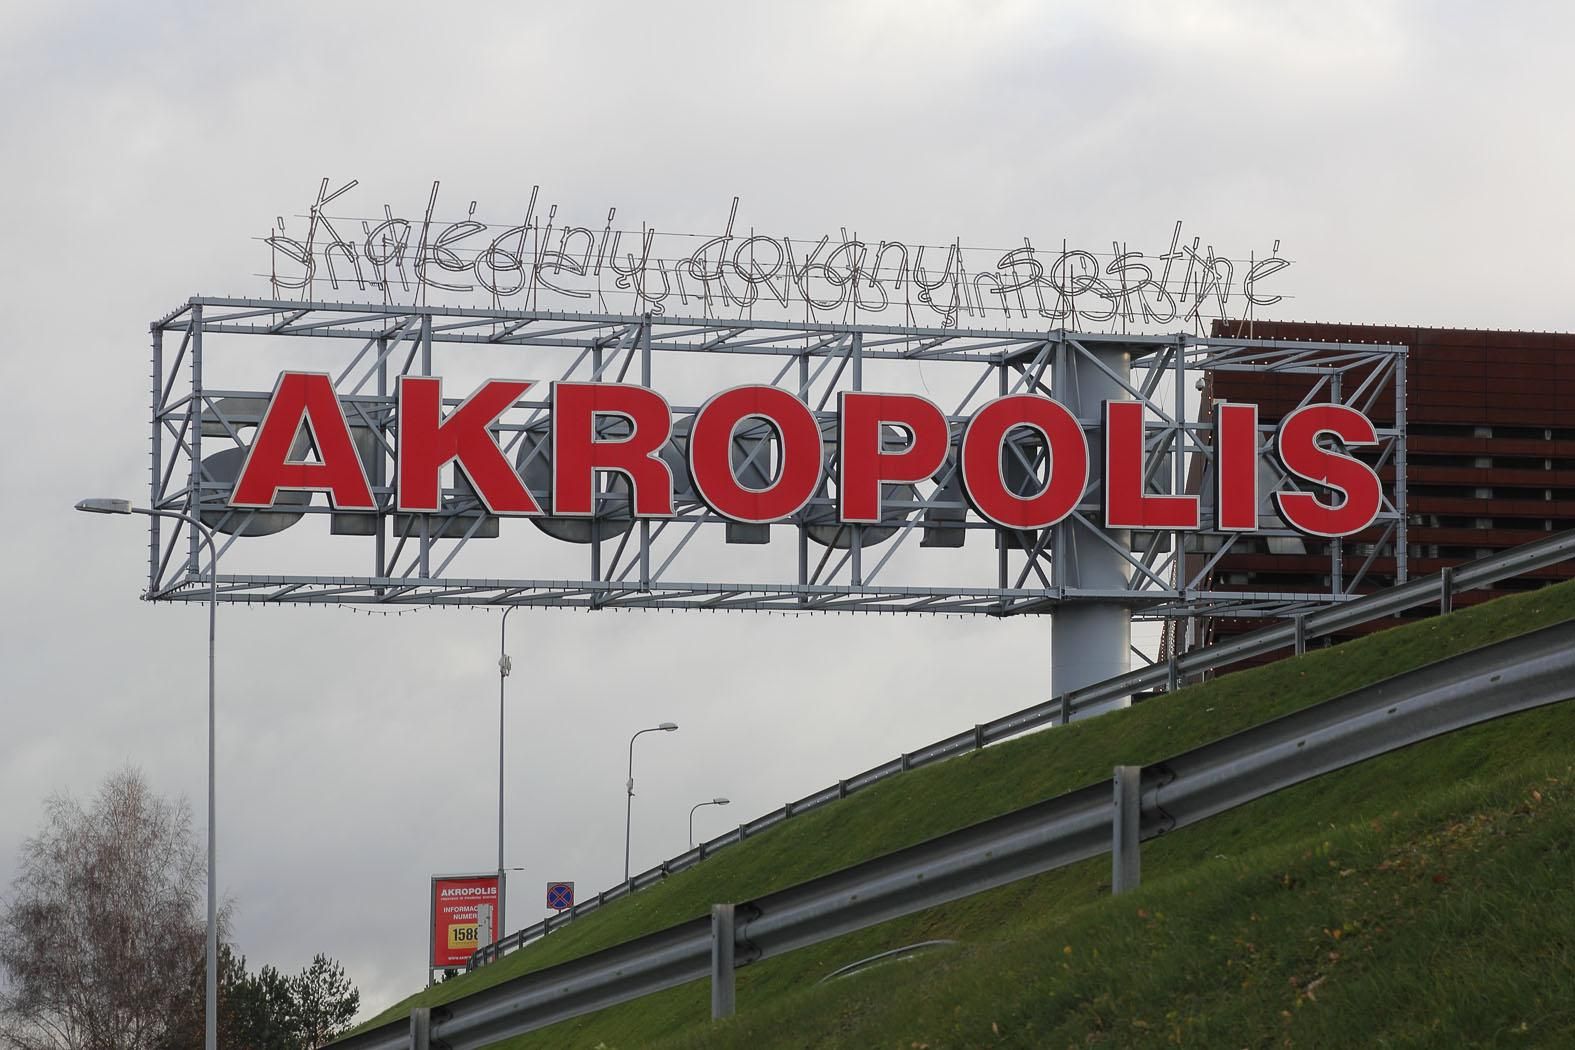 ТЦ "Akropolis" в Вильнюсе. Фото Виктора грецкаса, "Обзор"№